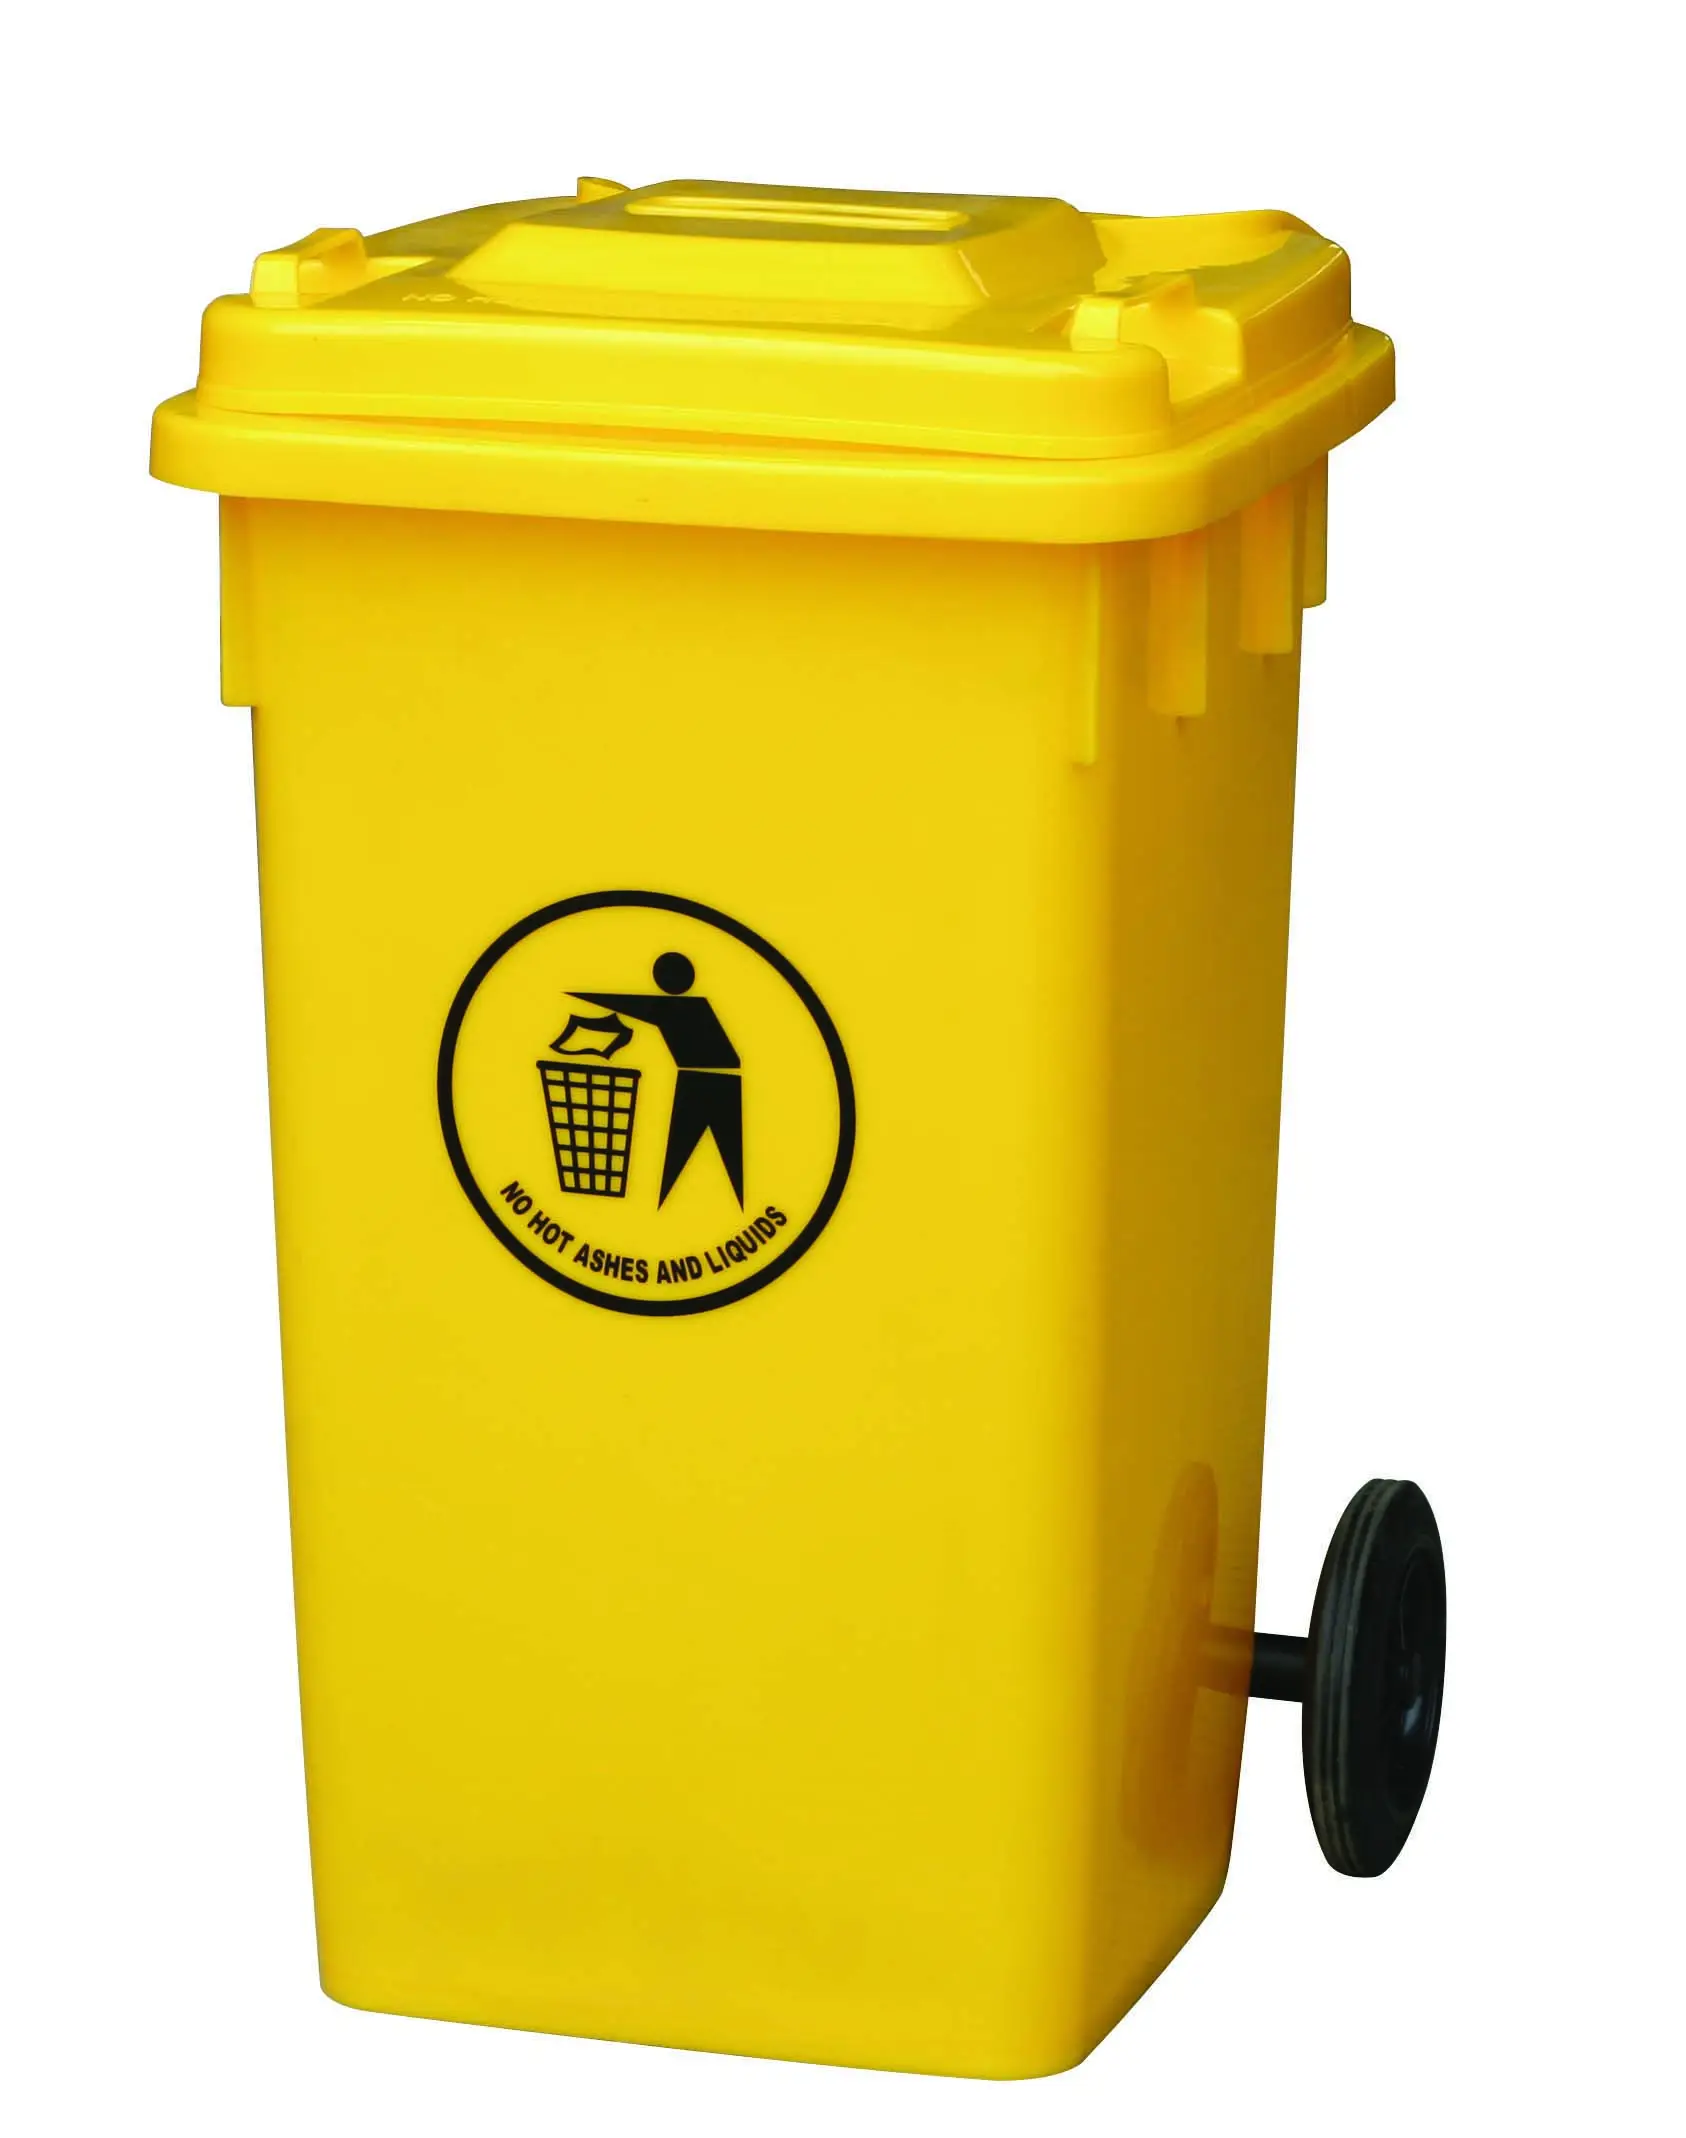 Товар №, Л, ярко-желтый пластиковый контейнер для мусора для коммерческого использования